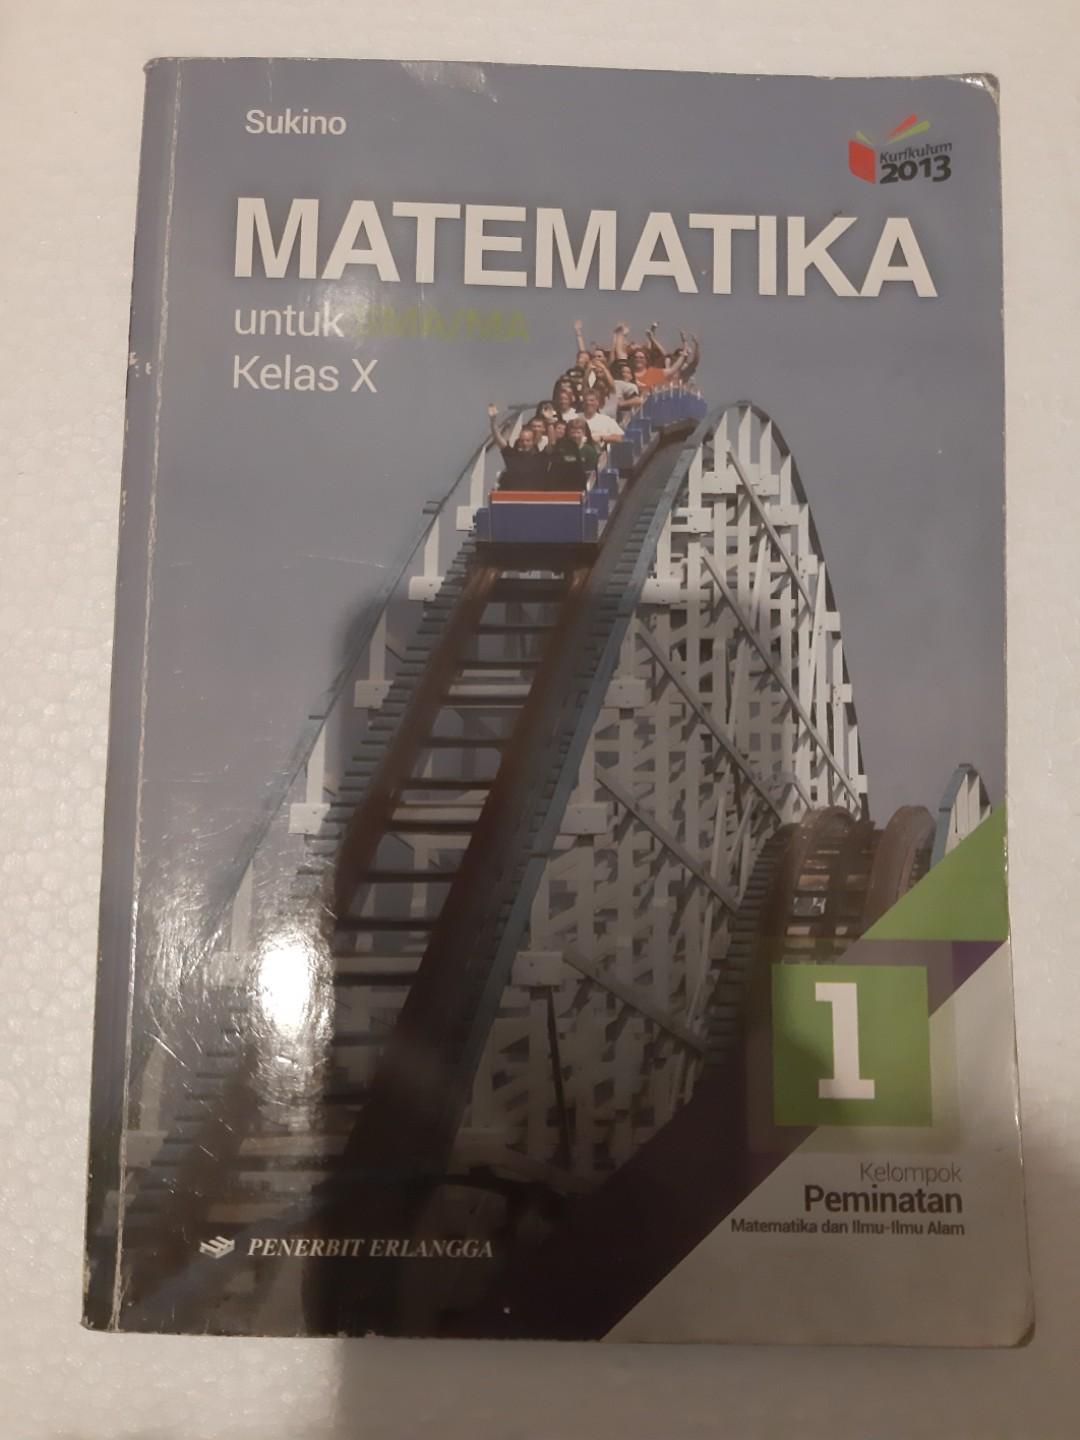 Matematika Peminatan Sma Kelas 10 Buku Alat Tulis Buku Pelajaran Di Carousell